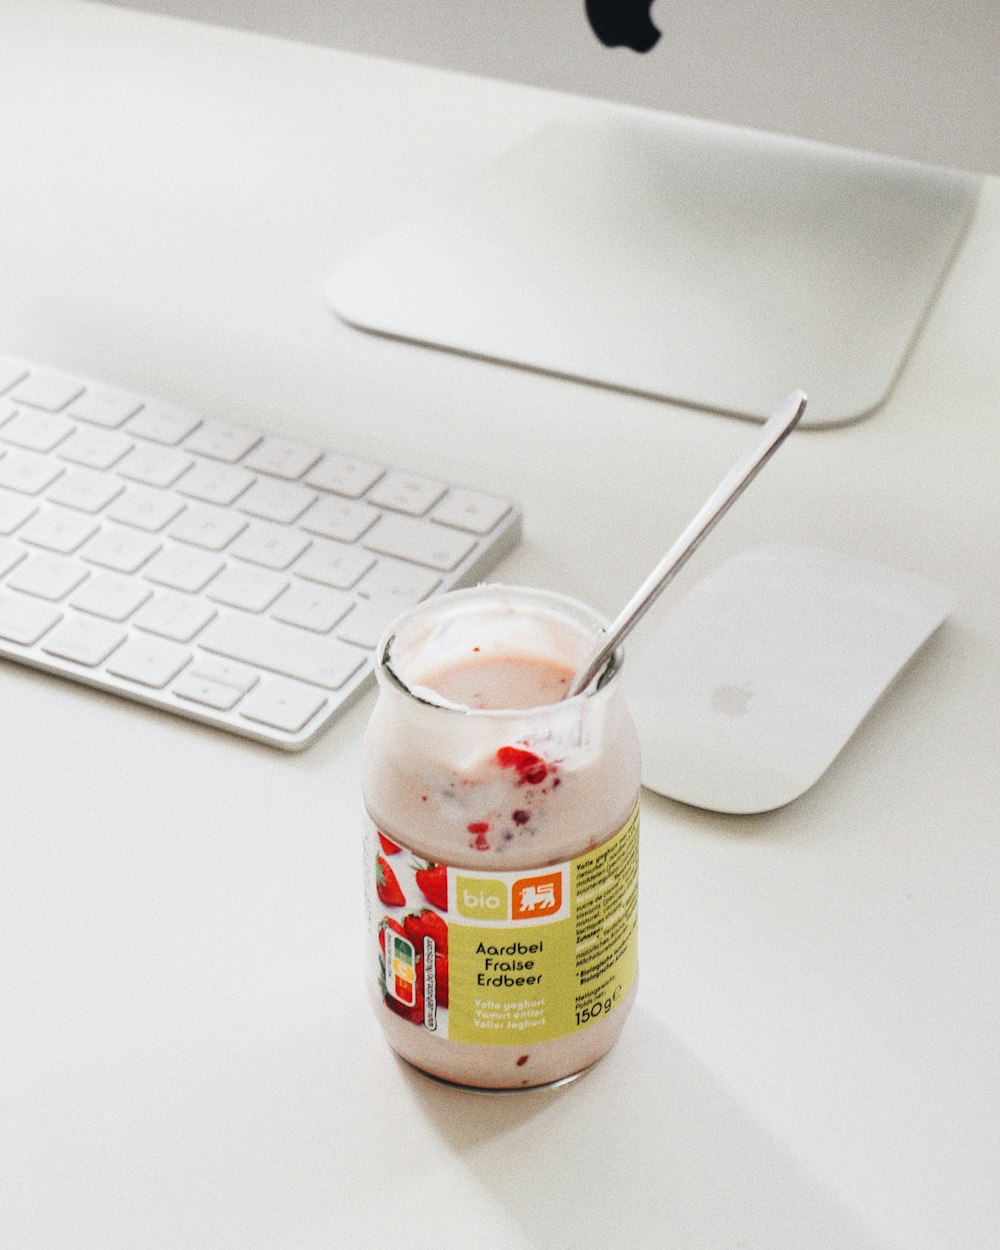 a jar of yogurt sitting on a desk next to a keyboard